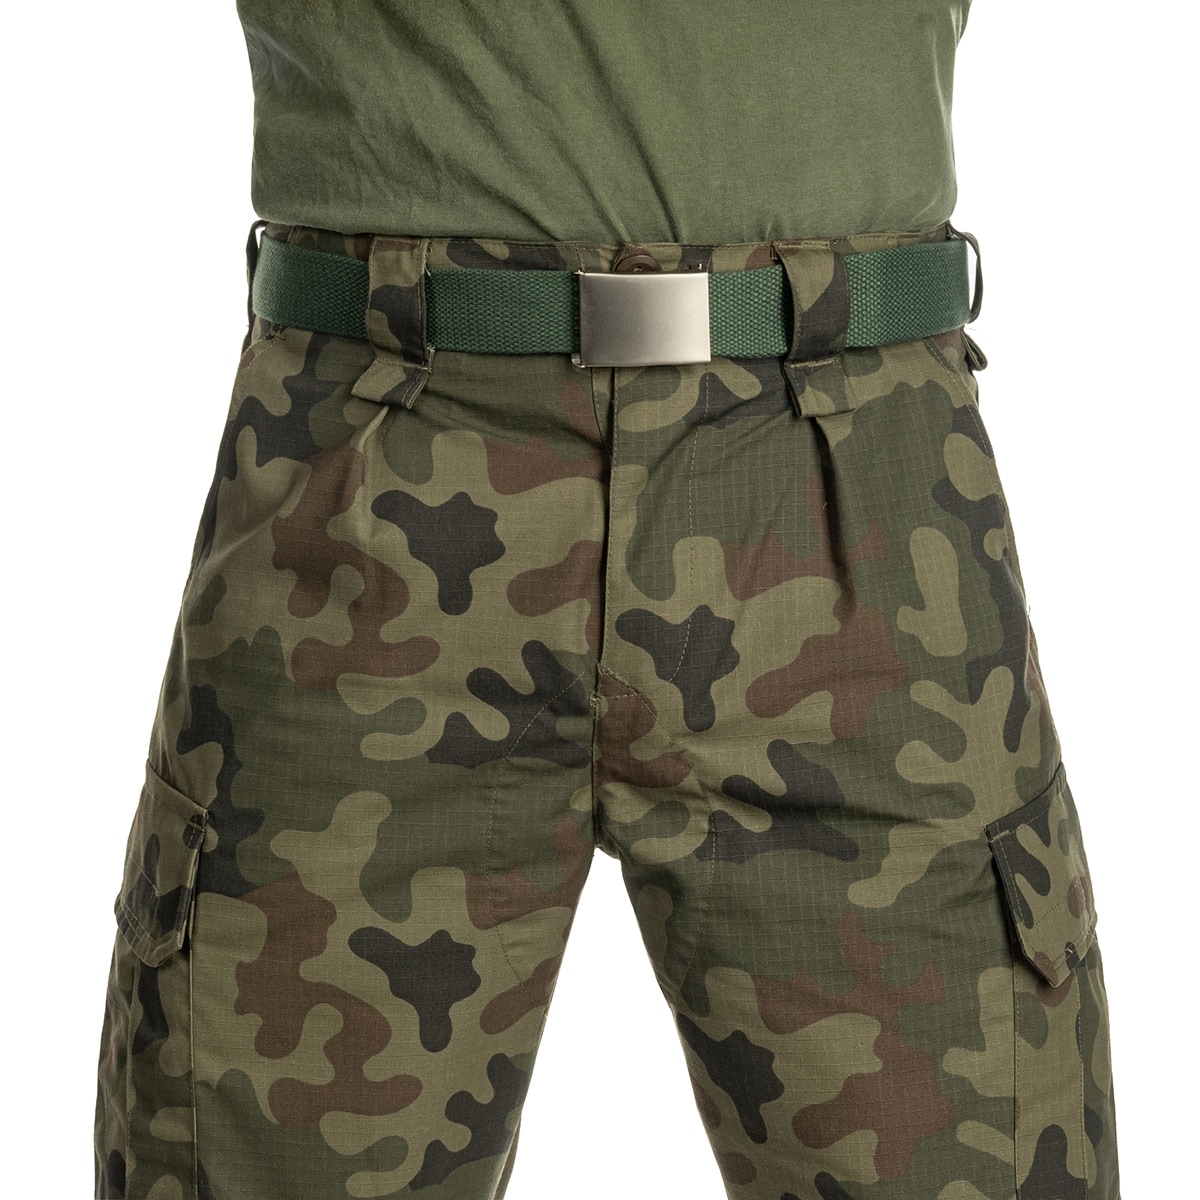 Spodnie mundurowe dziecięce MaxPro-Tech WZ 2010 Rip-Stop - PL Camo